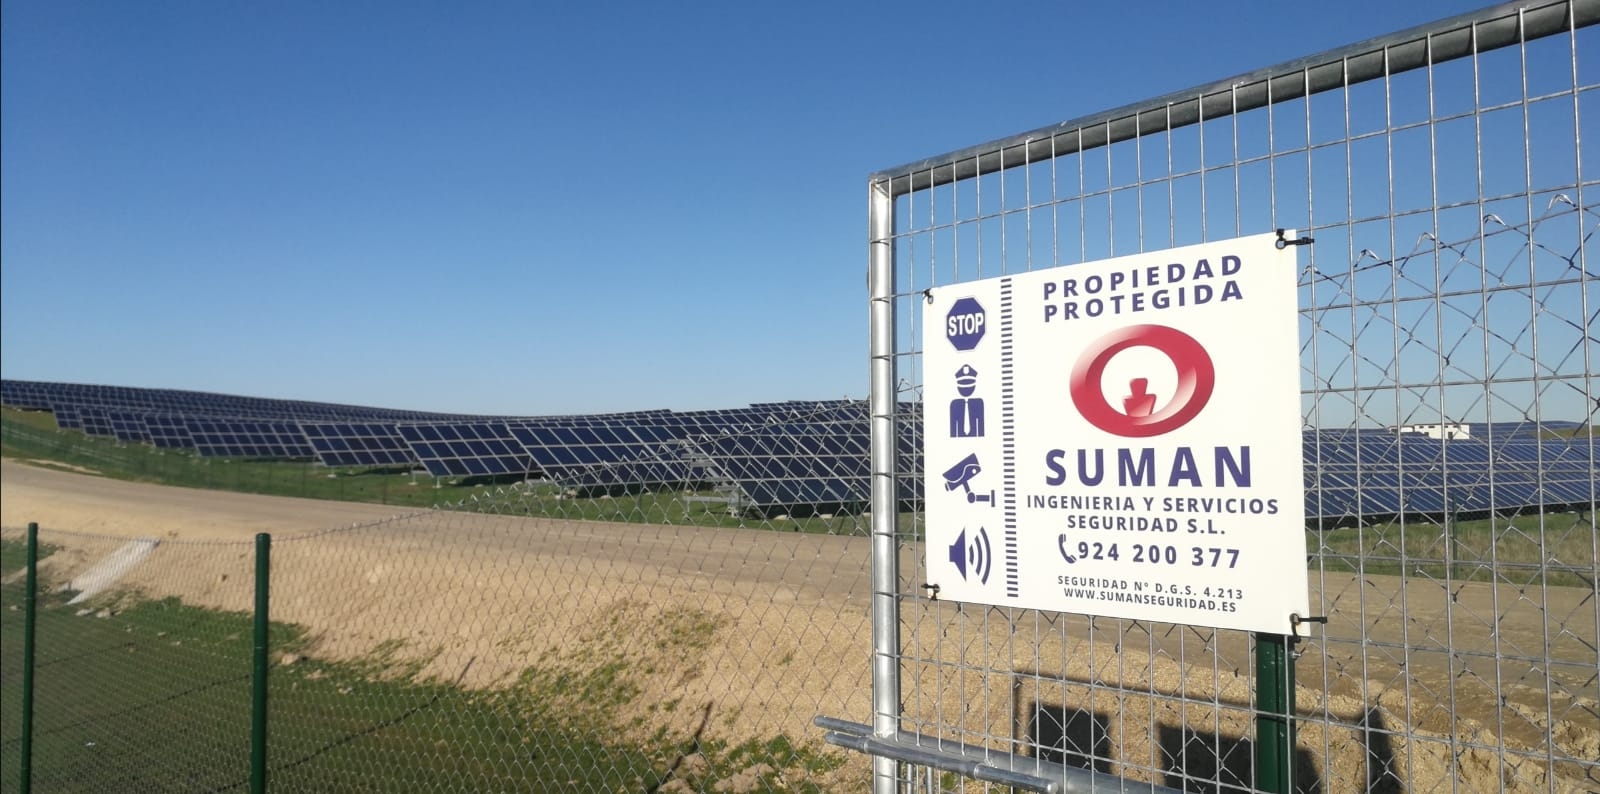 Suman Seguridad en Talayuela Solar, uno de los proyectos de Energía Solar Fotovoltaica más grandes de Europa.